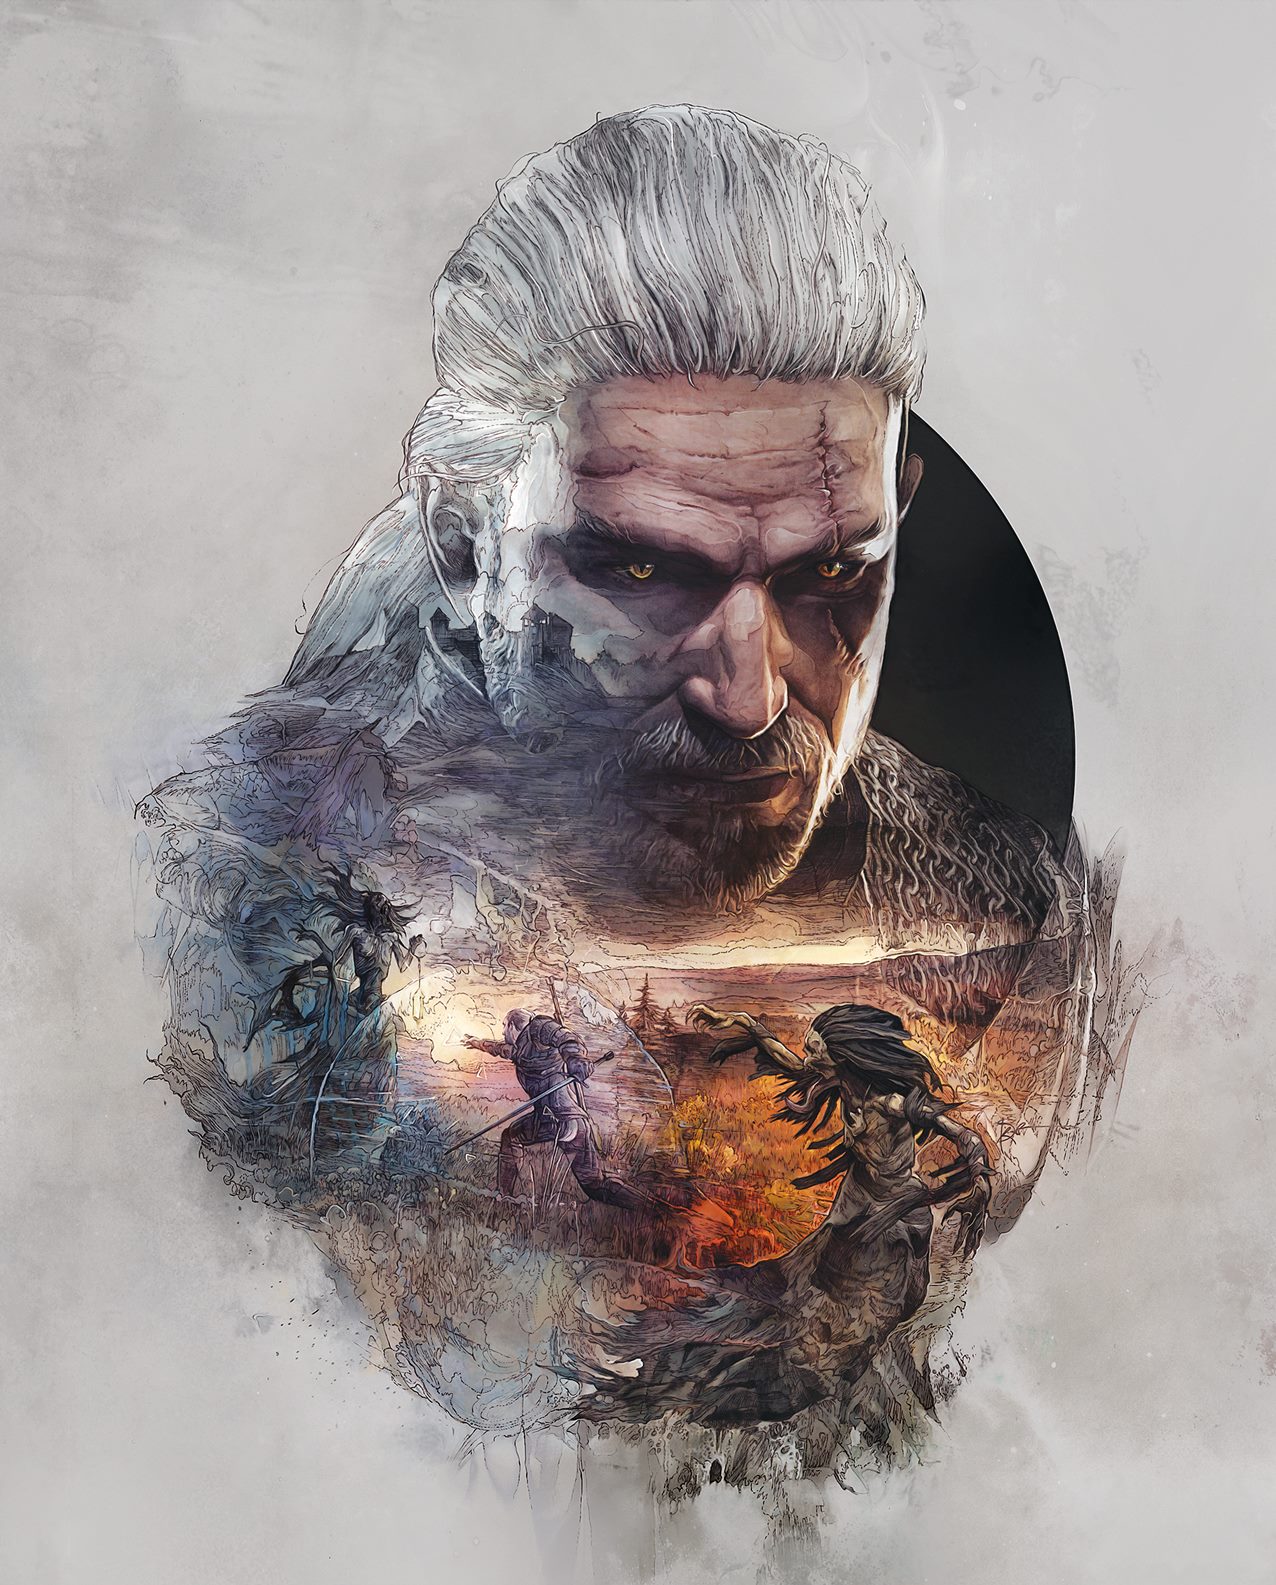 Poster du jeu vidéo The Witcher 3: Wild Hunt avec Geralt de Riv